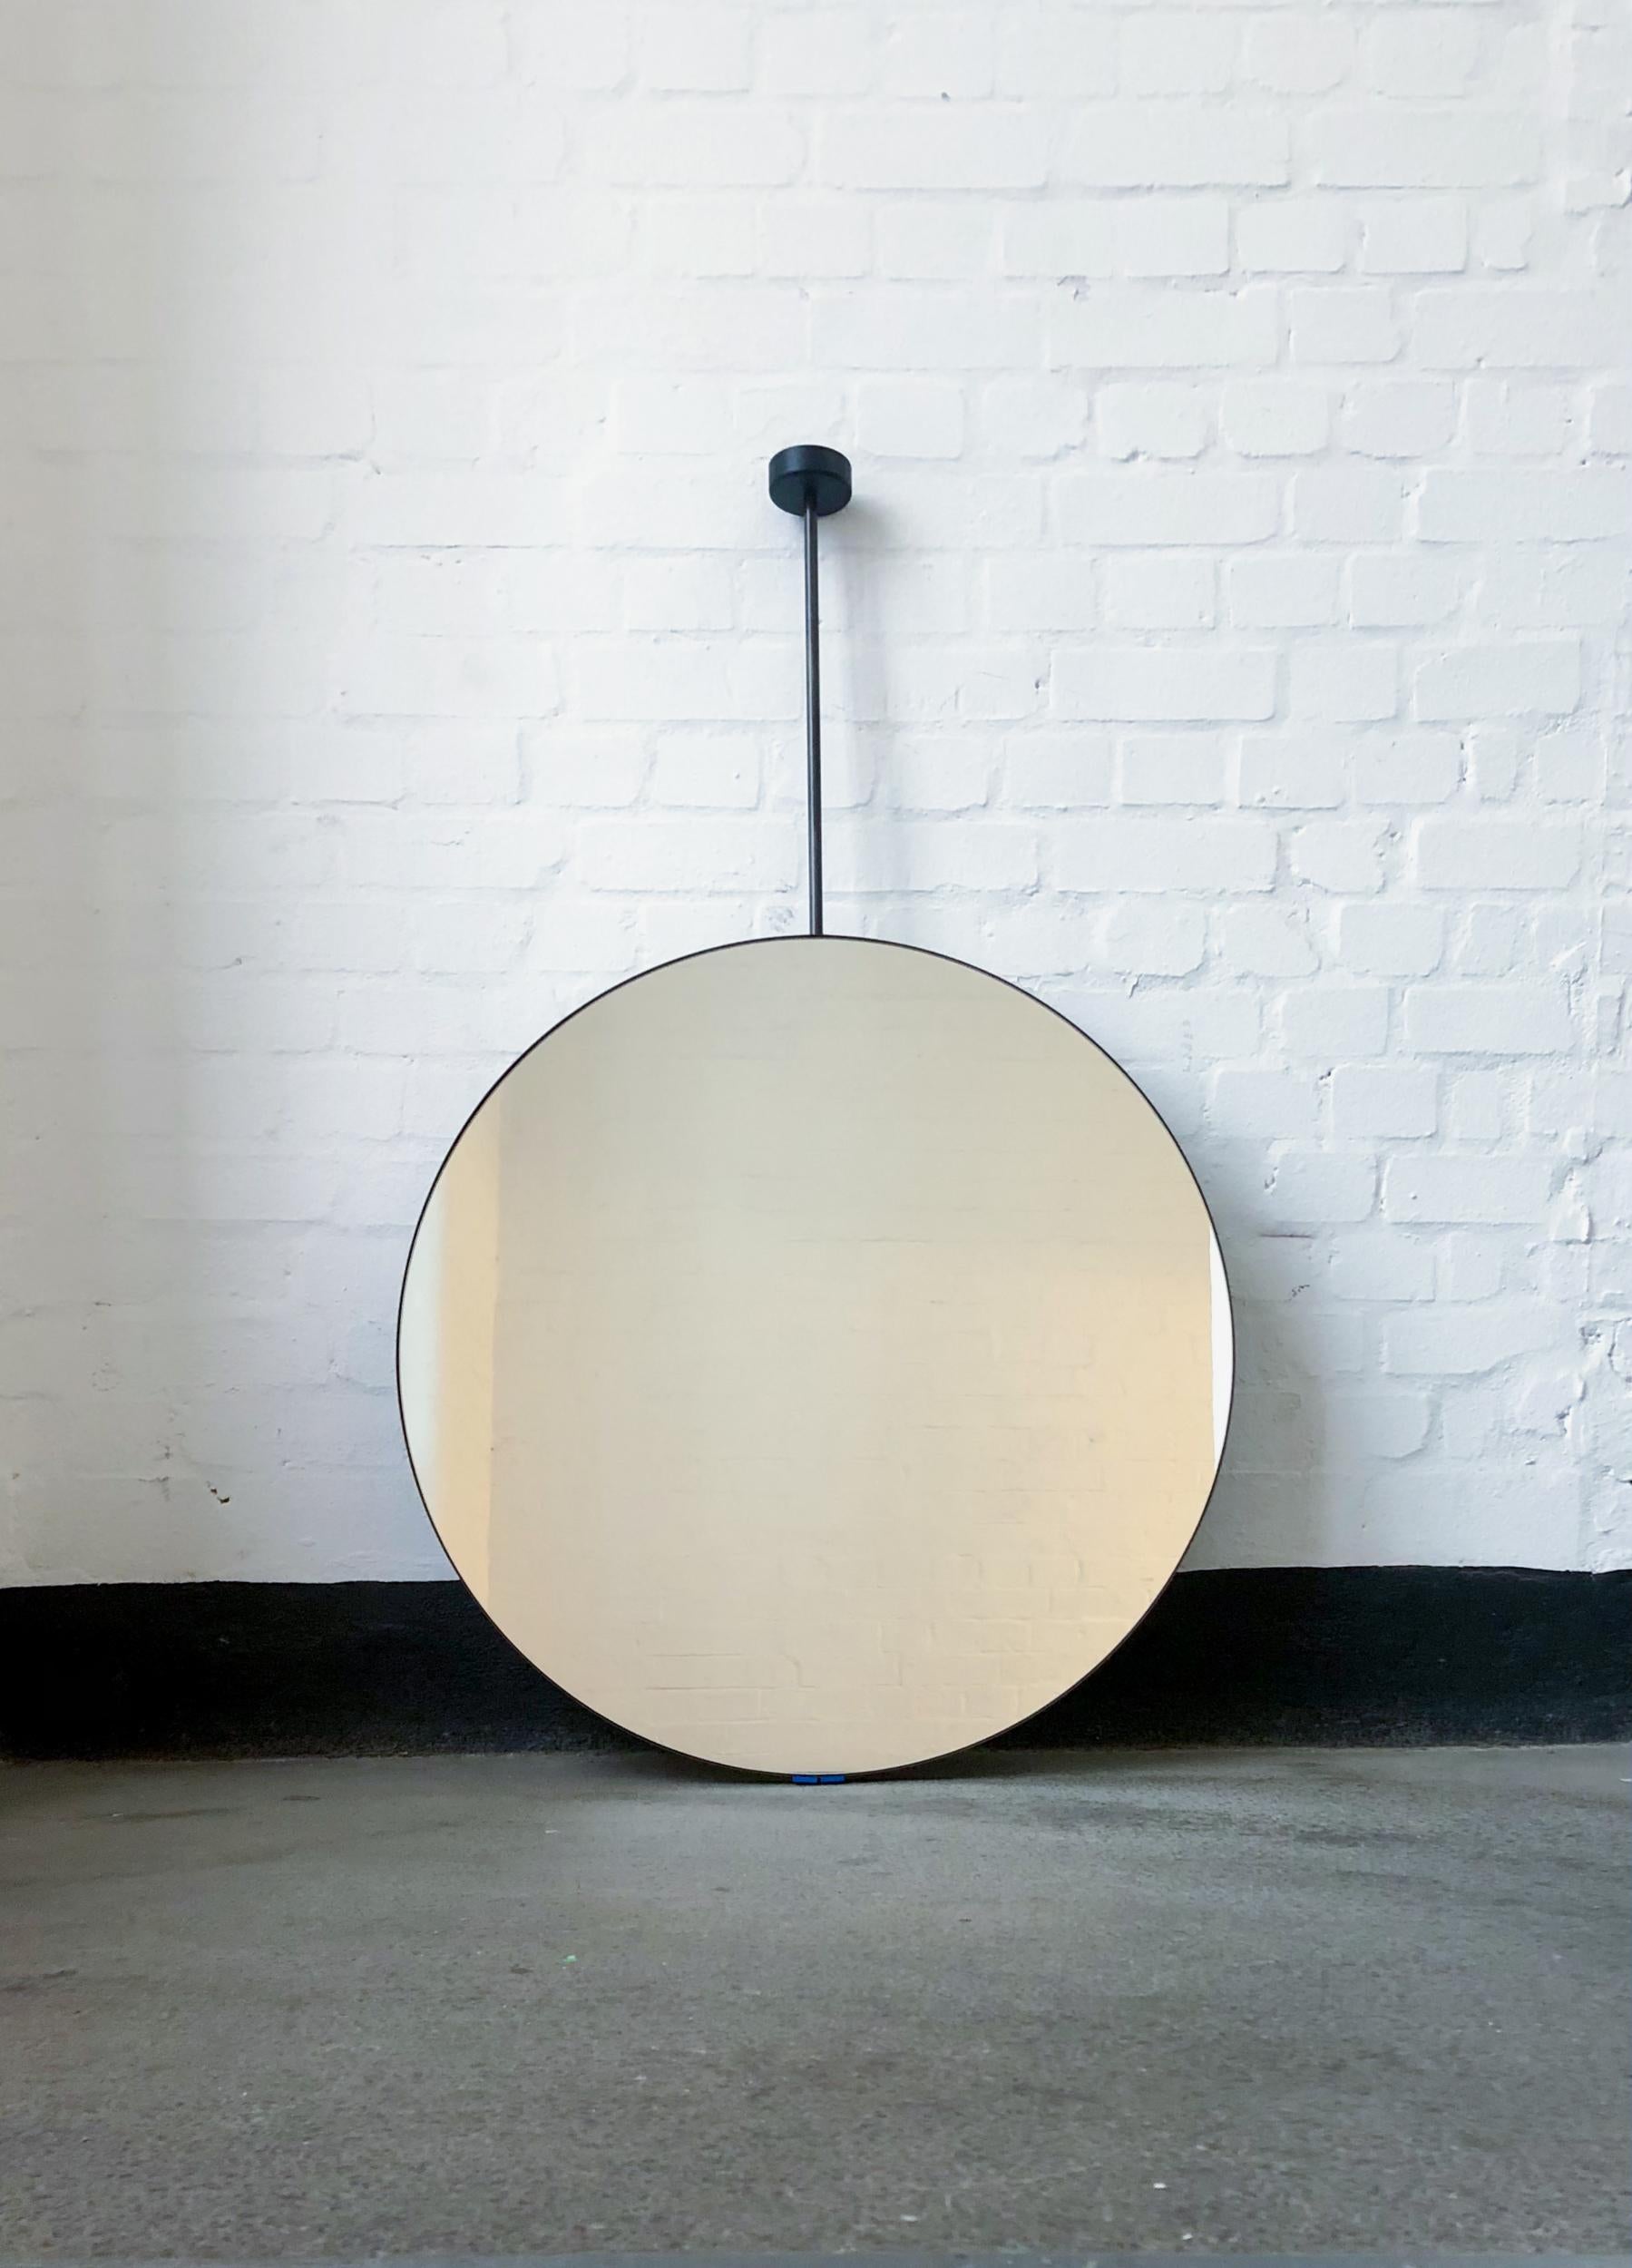 Charmanter, runder, von der Decke abgehängter Spiegel mit einem Rahmen aus geschwärztem Edelstahl.

650mm (25.6